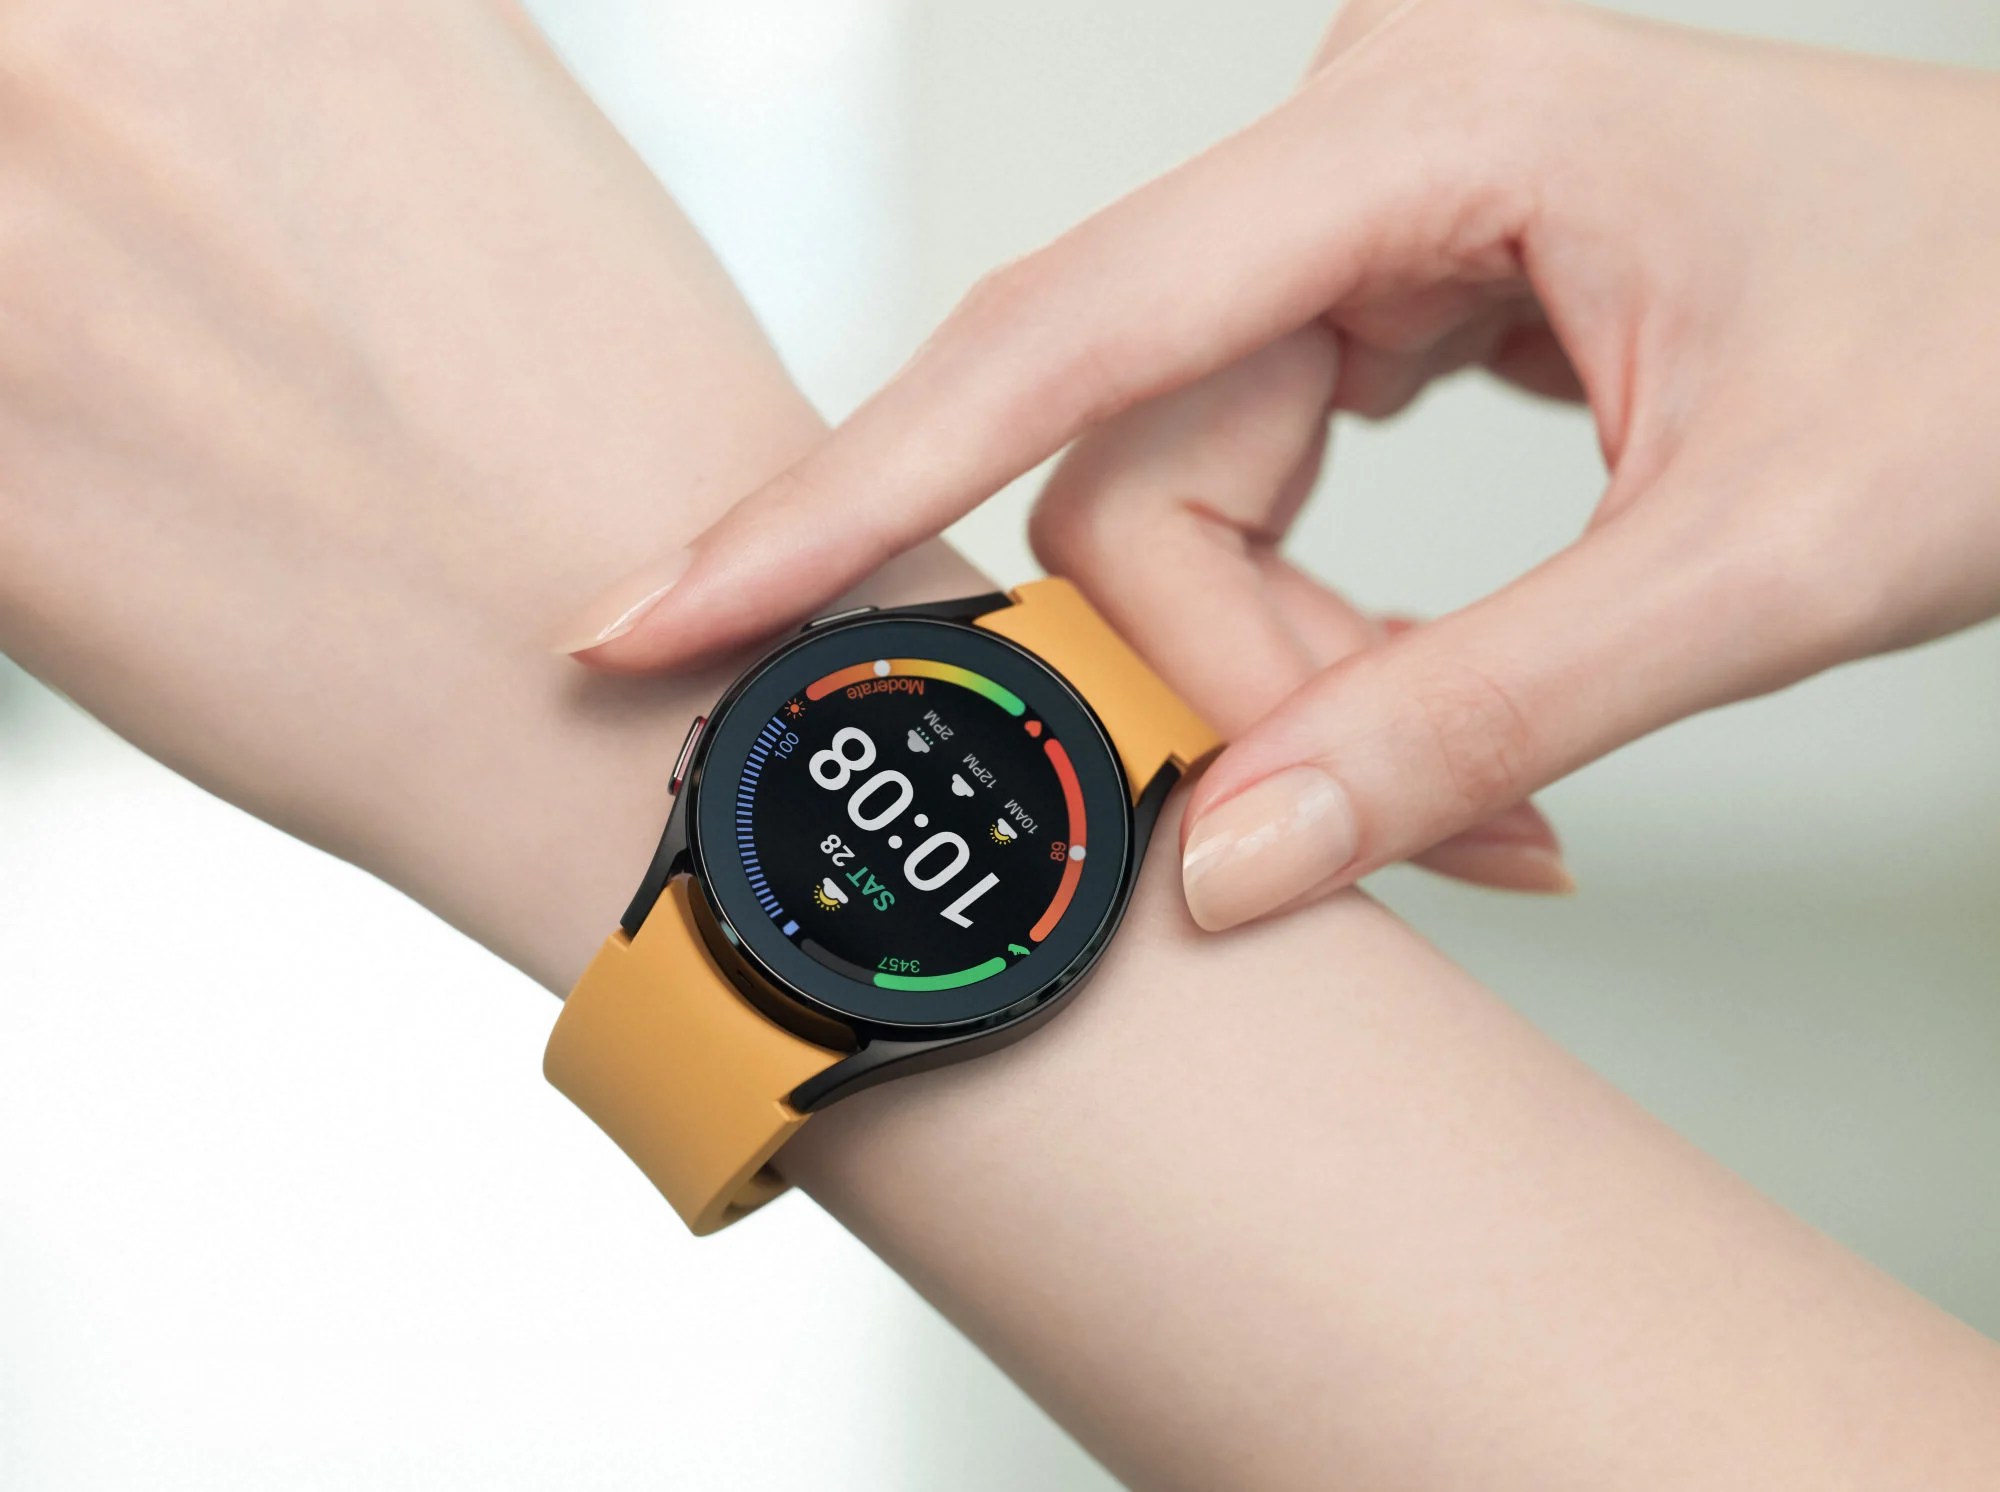 La Galaxy Watch 5 Pro intègrerait des matériaux luxueux et résistants